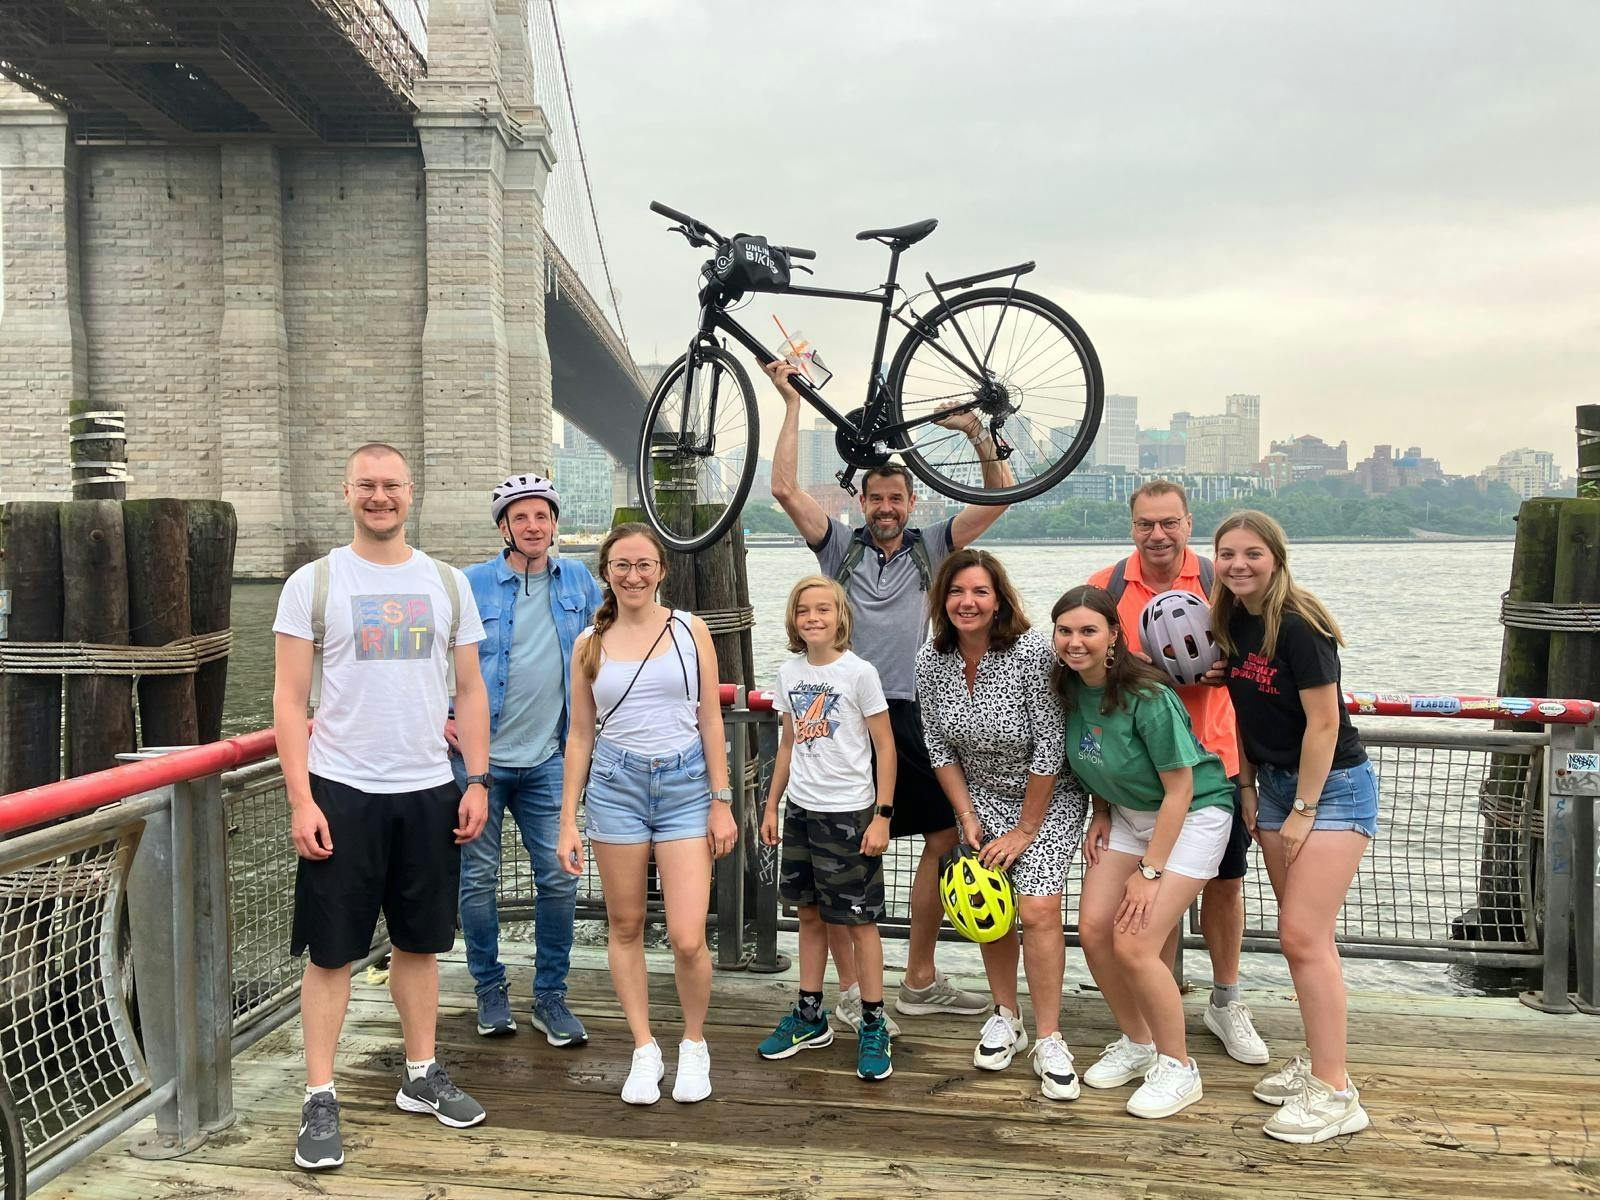 Private geführte Fahrradtour zur Brooklyn Bridge